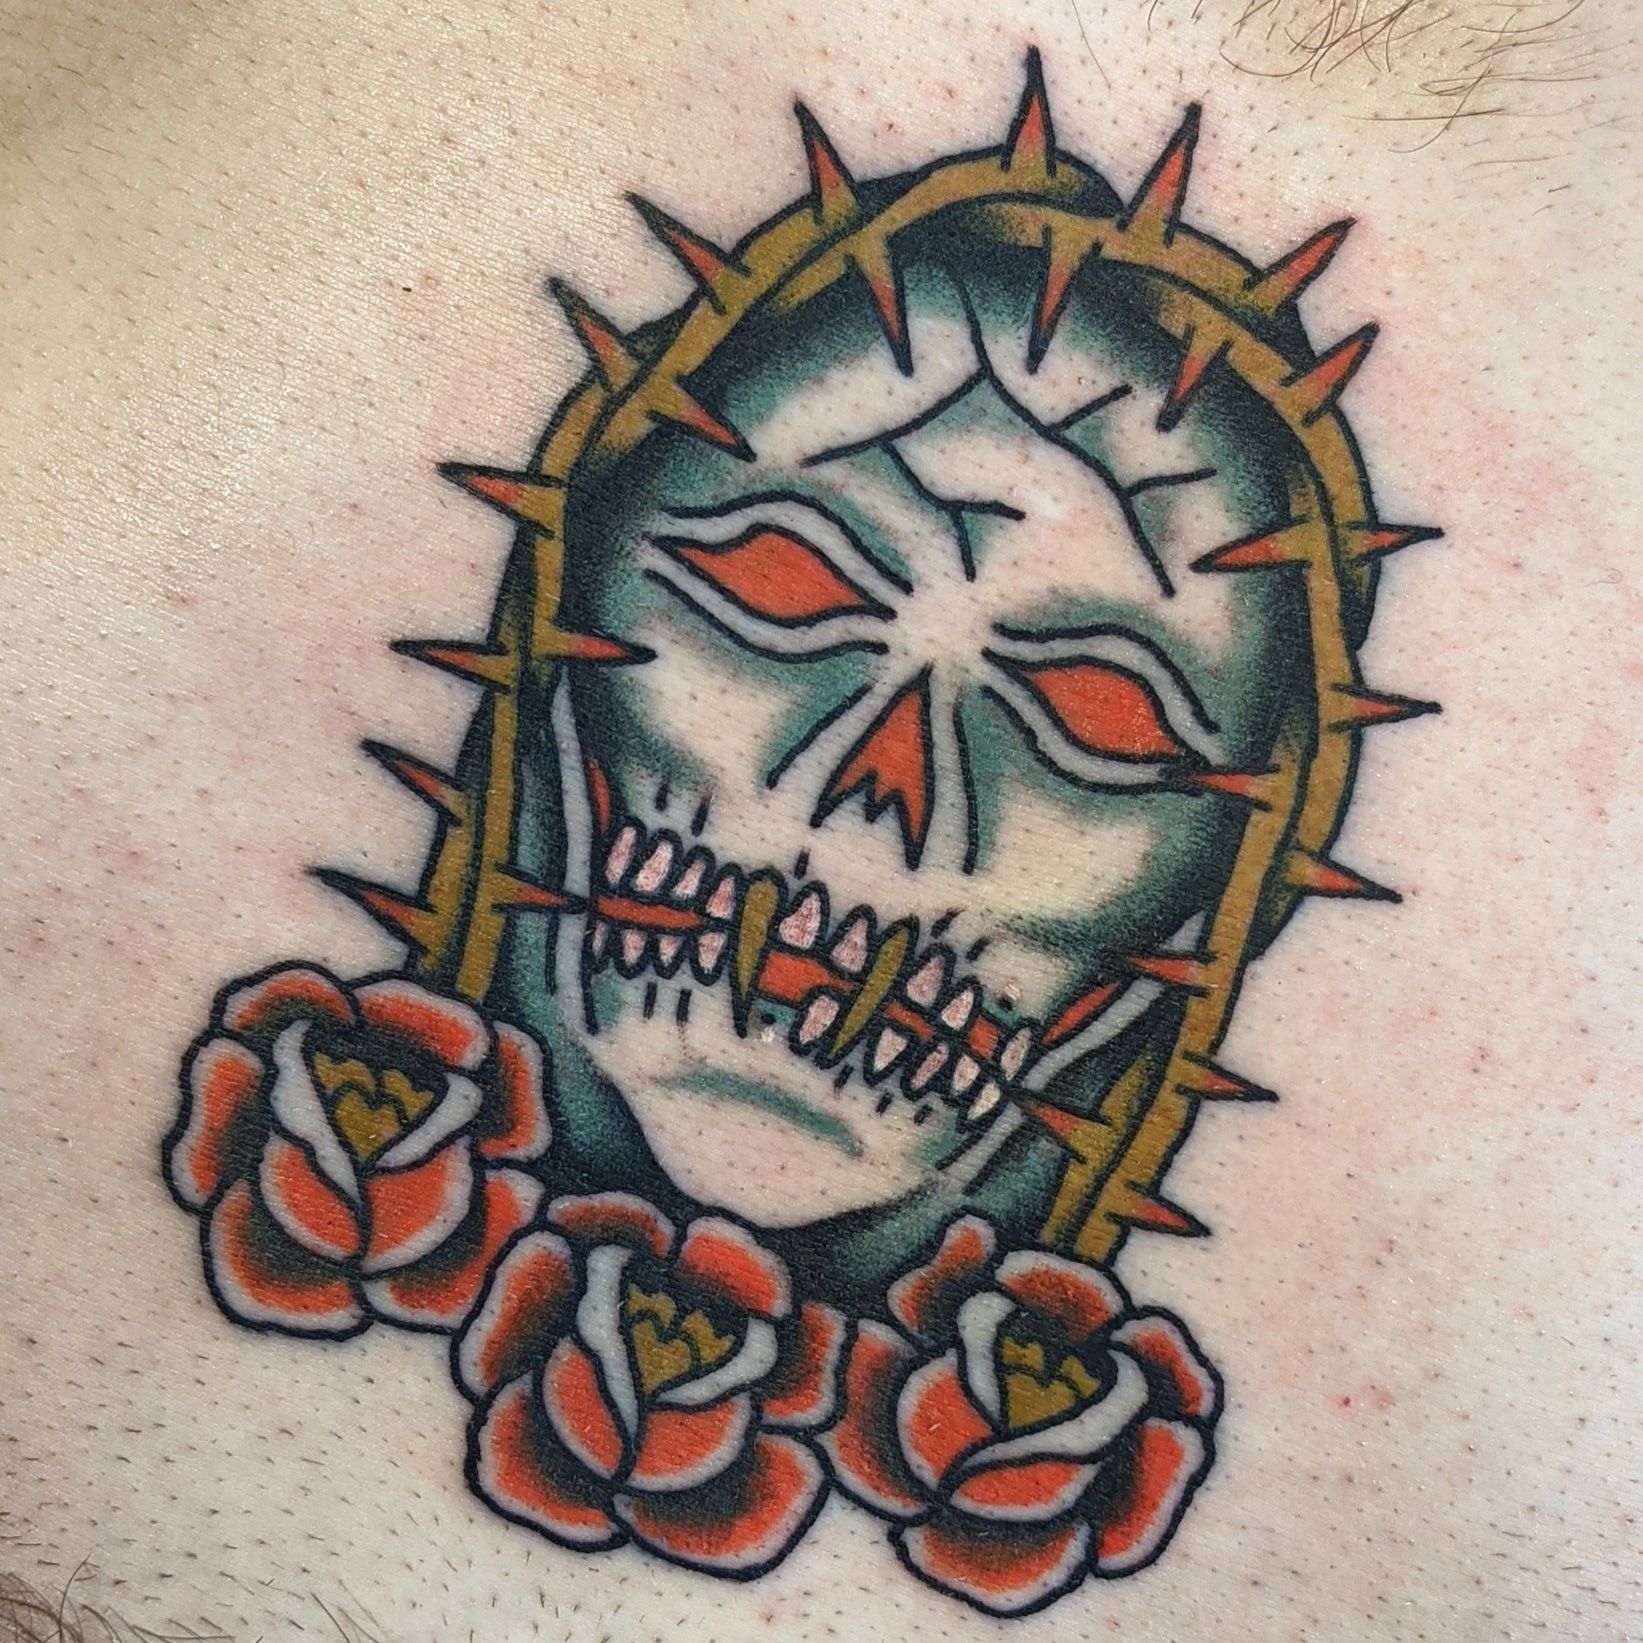 40 arm skull tattoos - Skullspiration